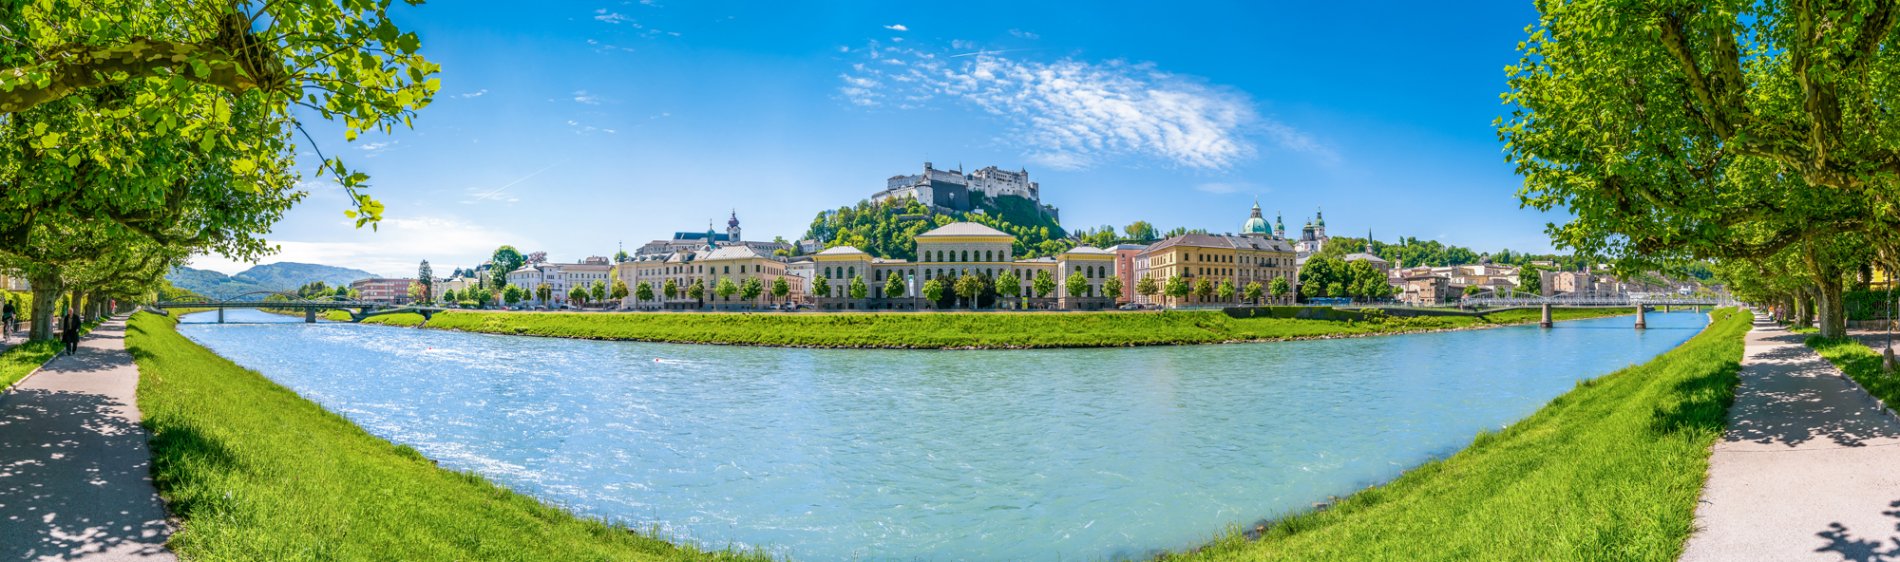 Salzburg – Cesky Krumlov – Prague